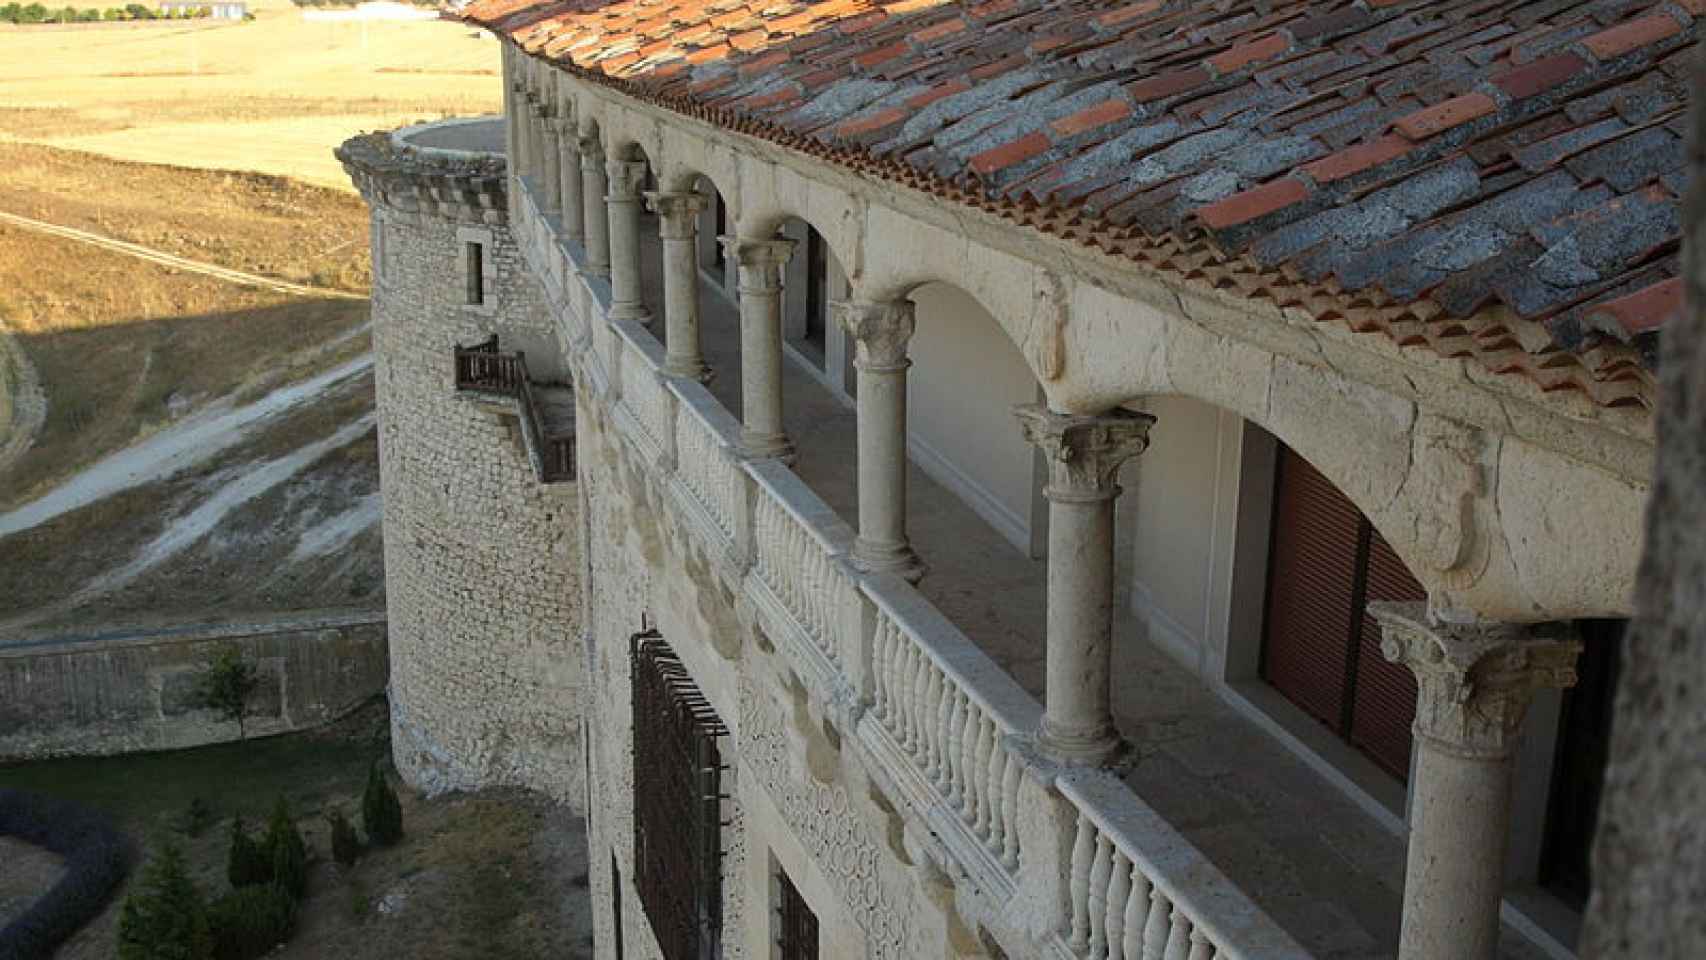 Balconada sur del castillo